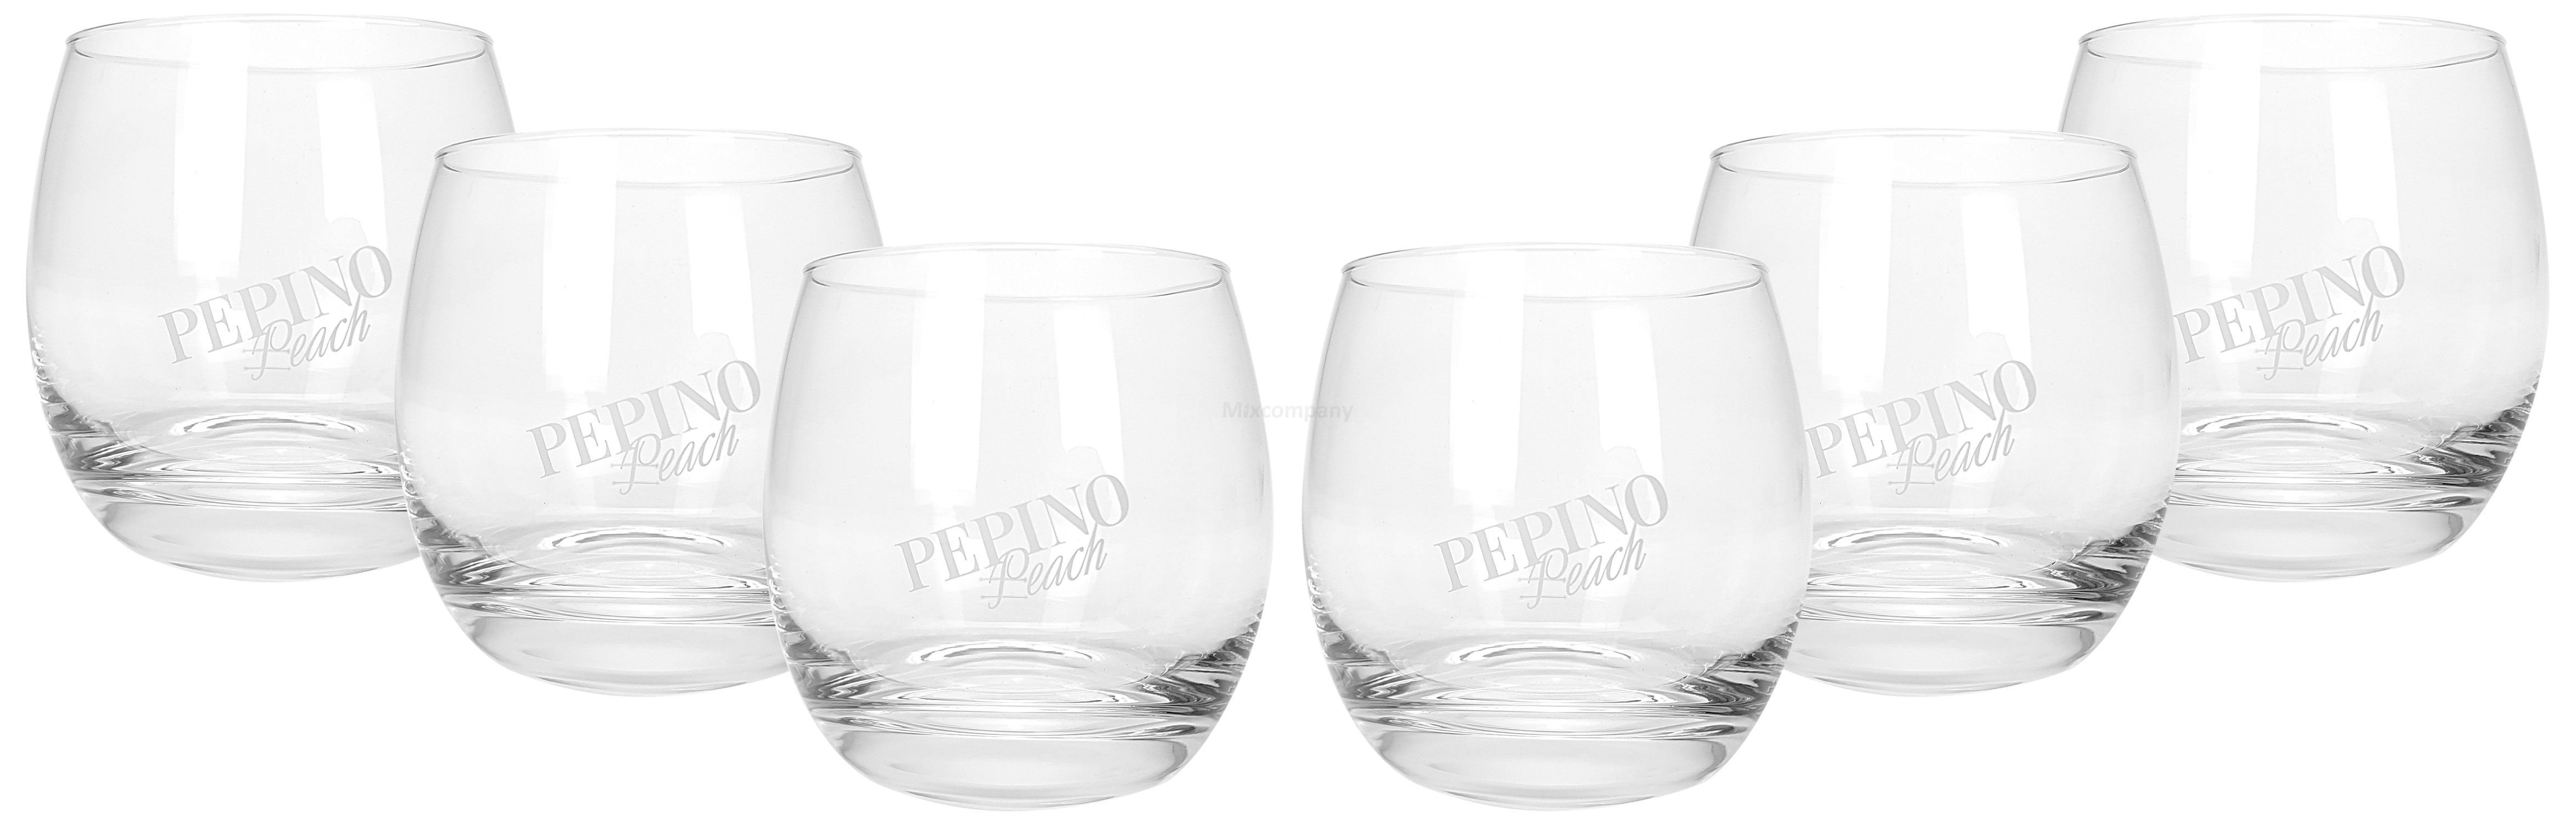 Pepino Peach Tumbler Glas Gläser Set - 6x Gläser 2/4cl geeicht